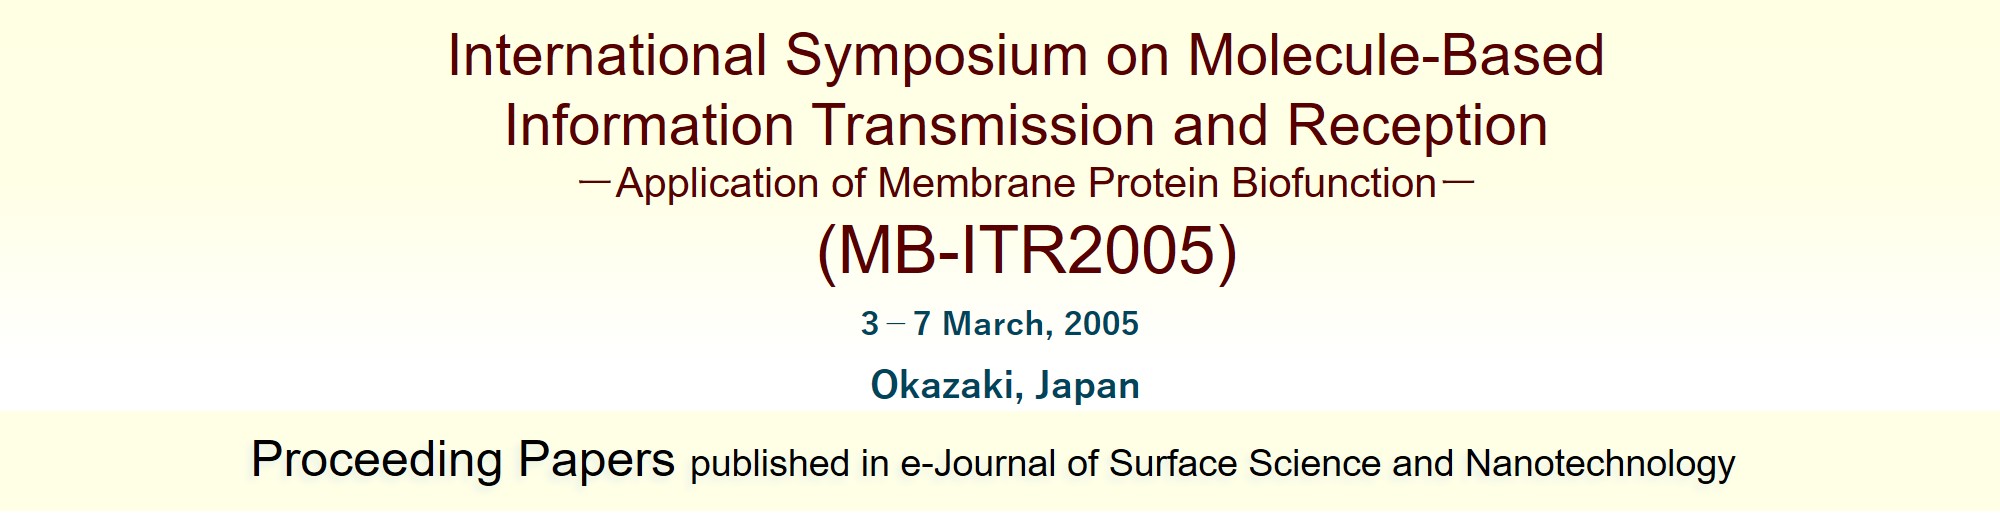 MB-ITR2005